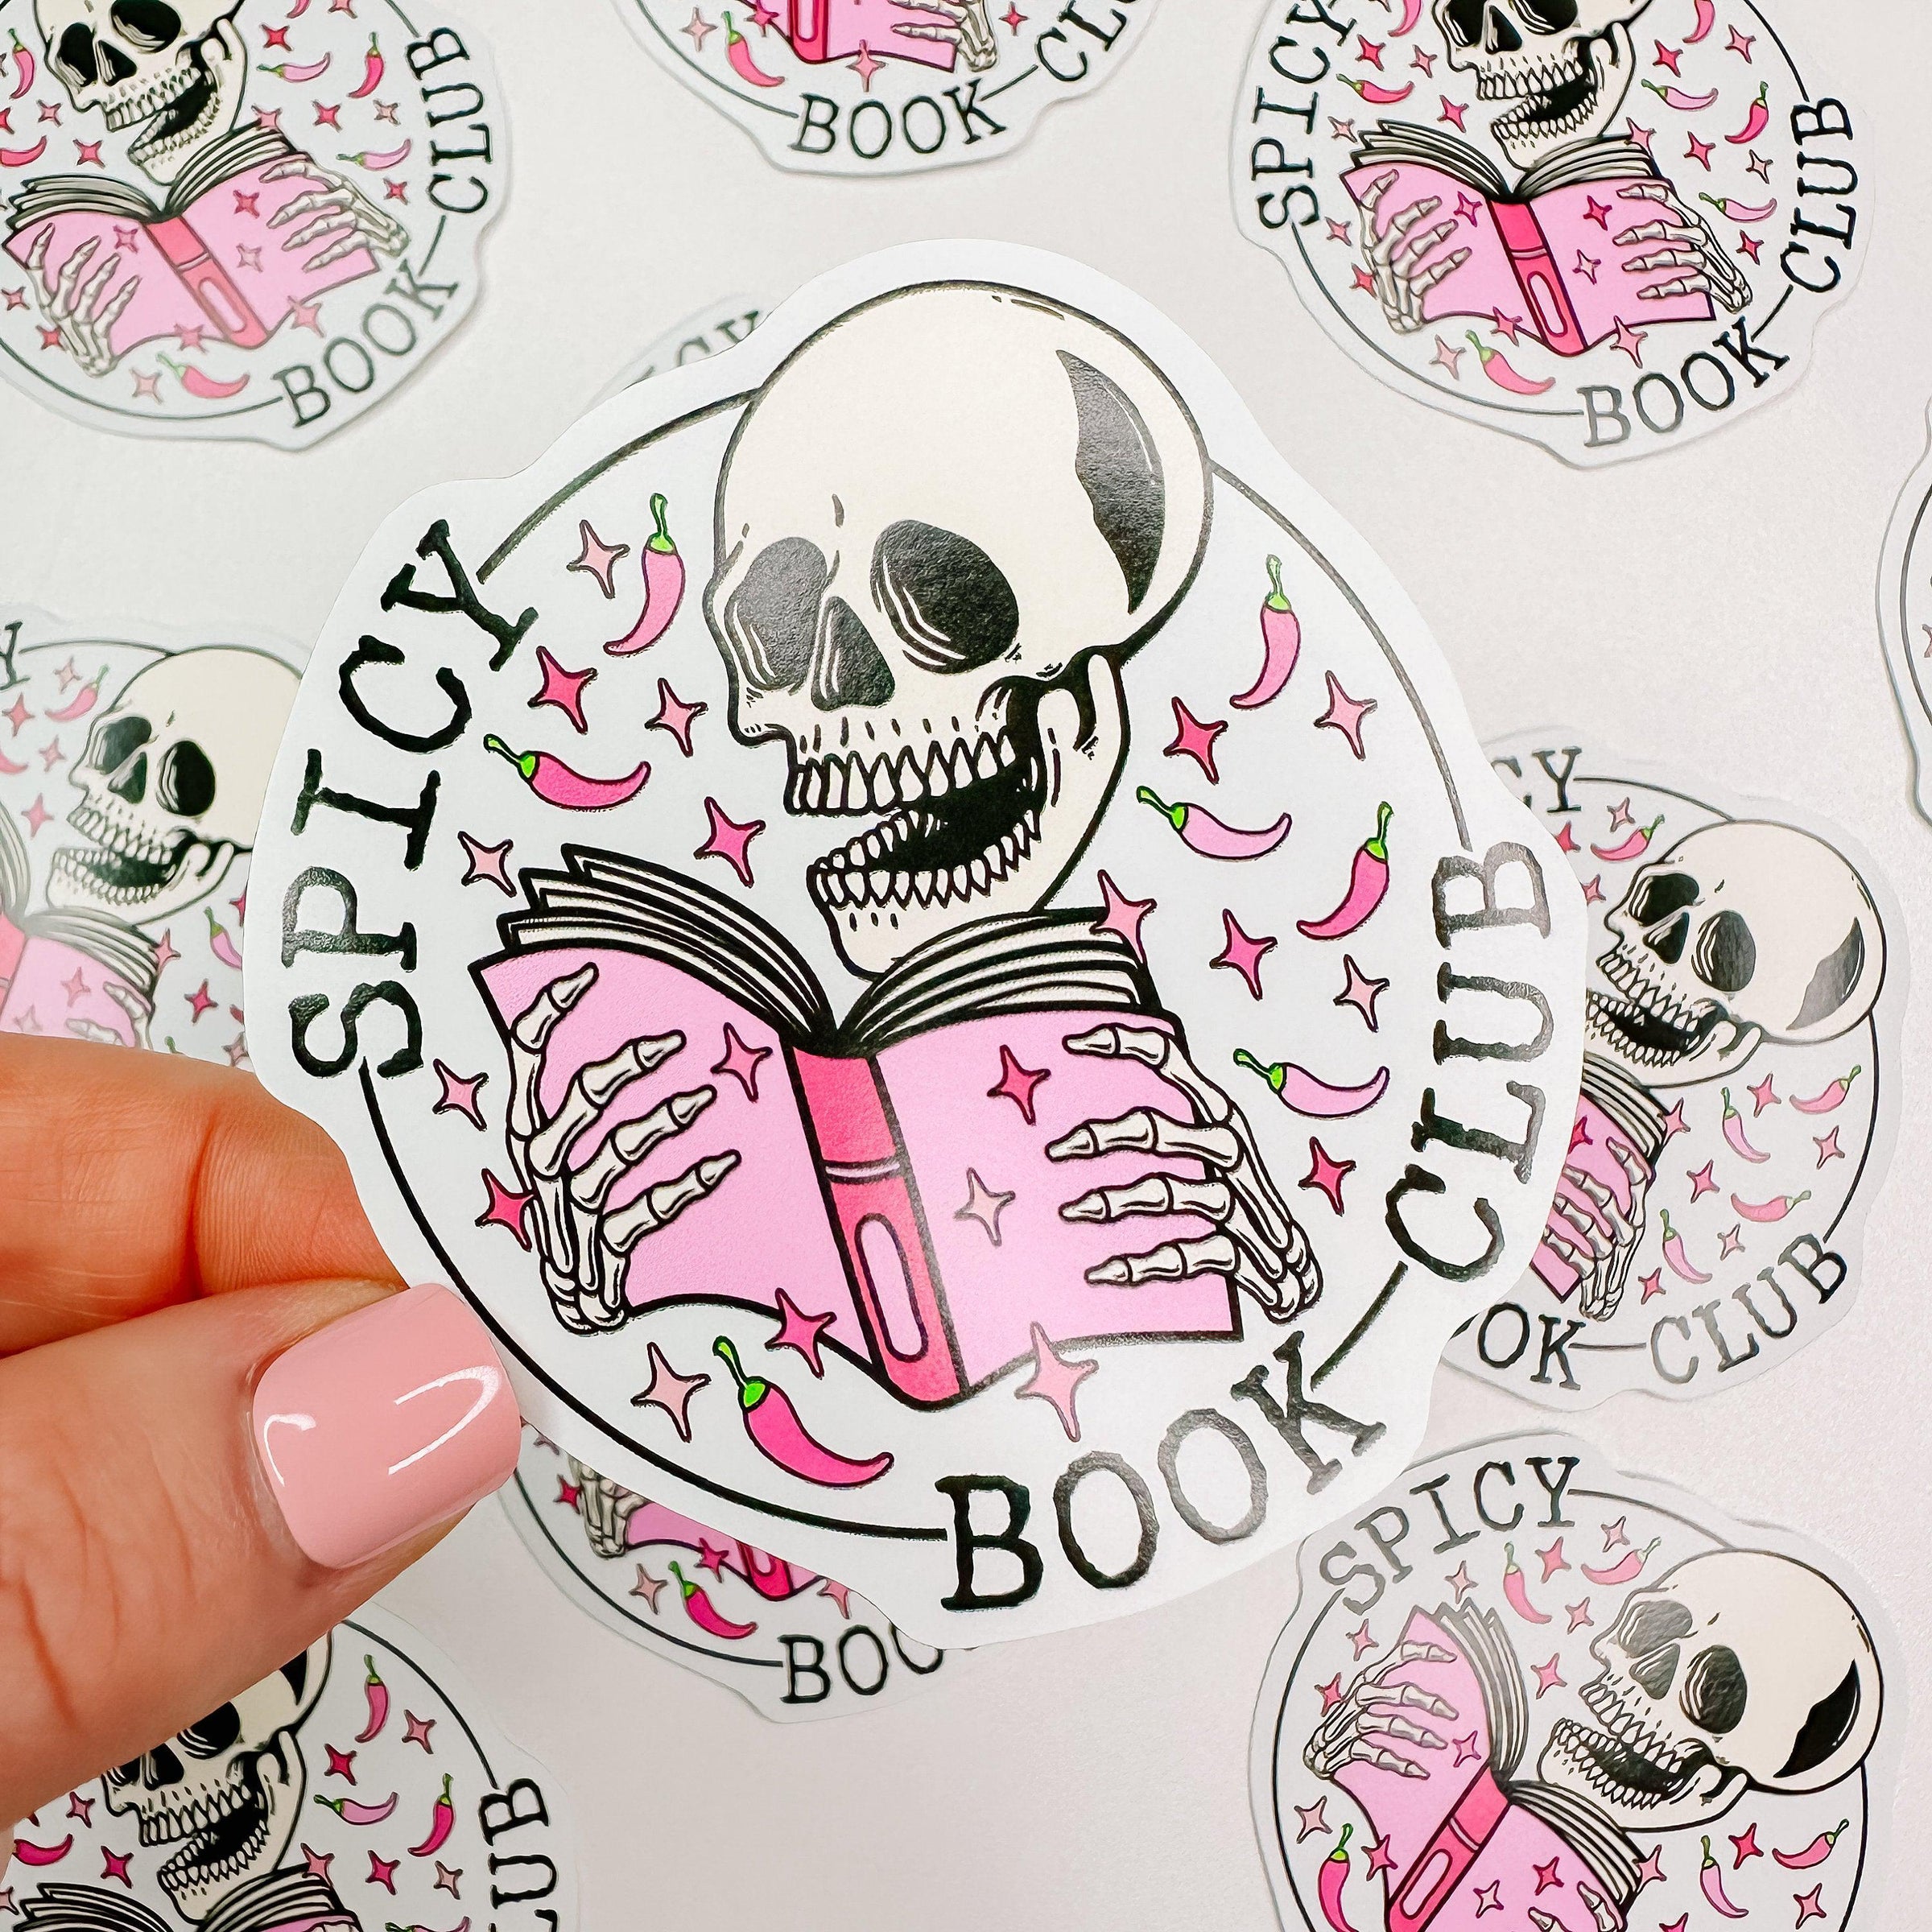 Book Club Stickers